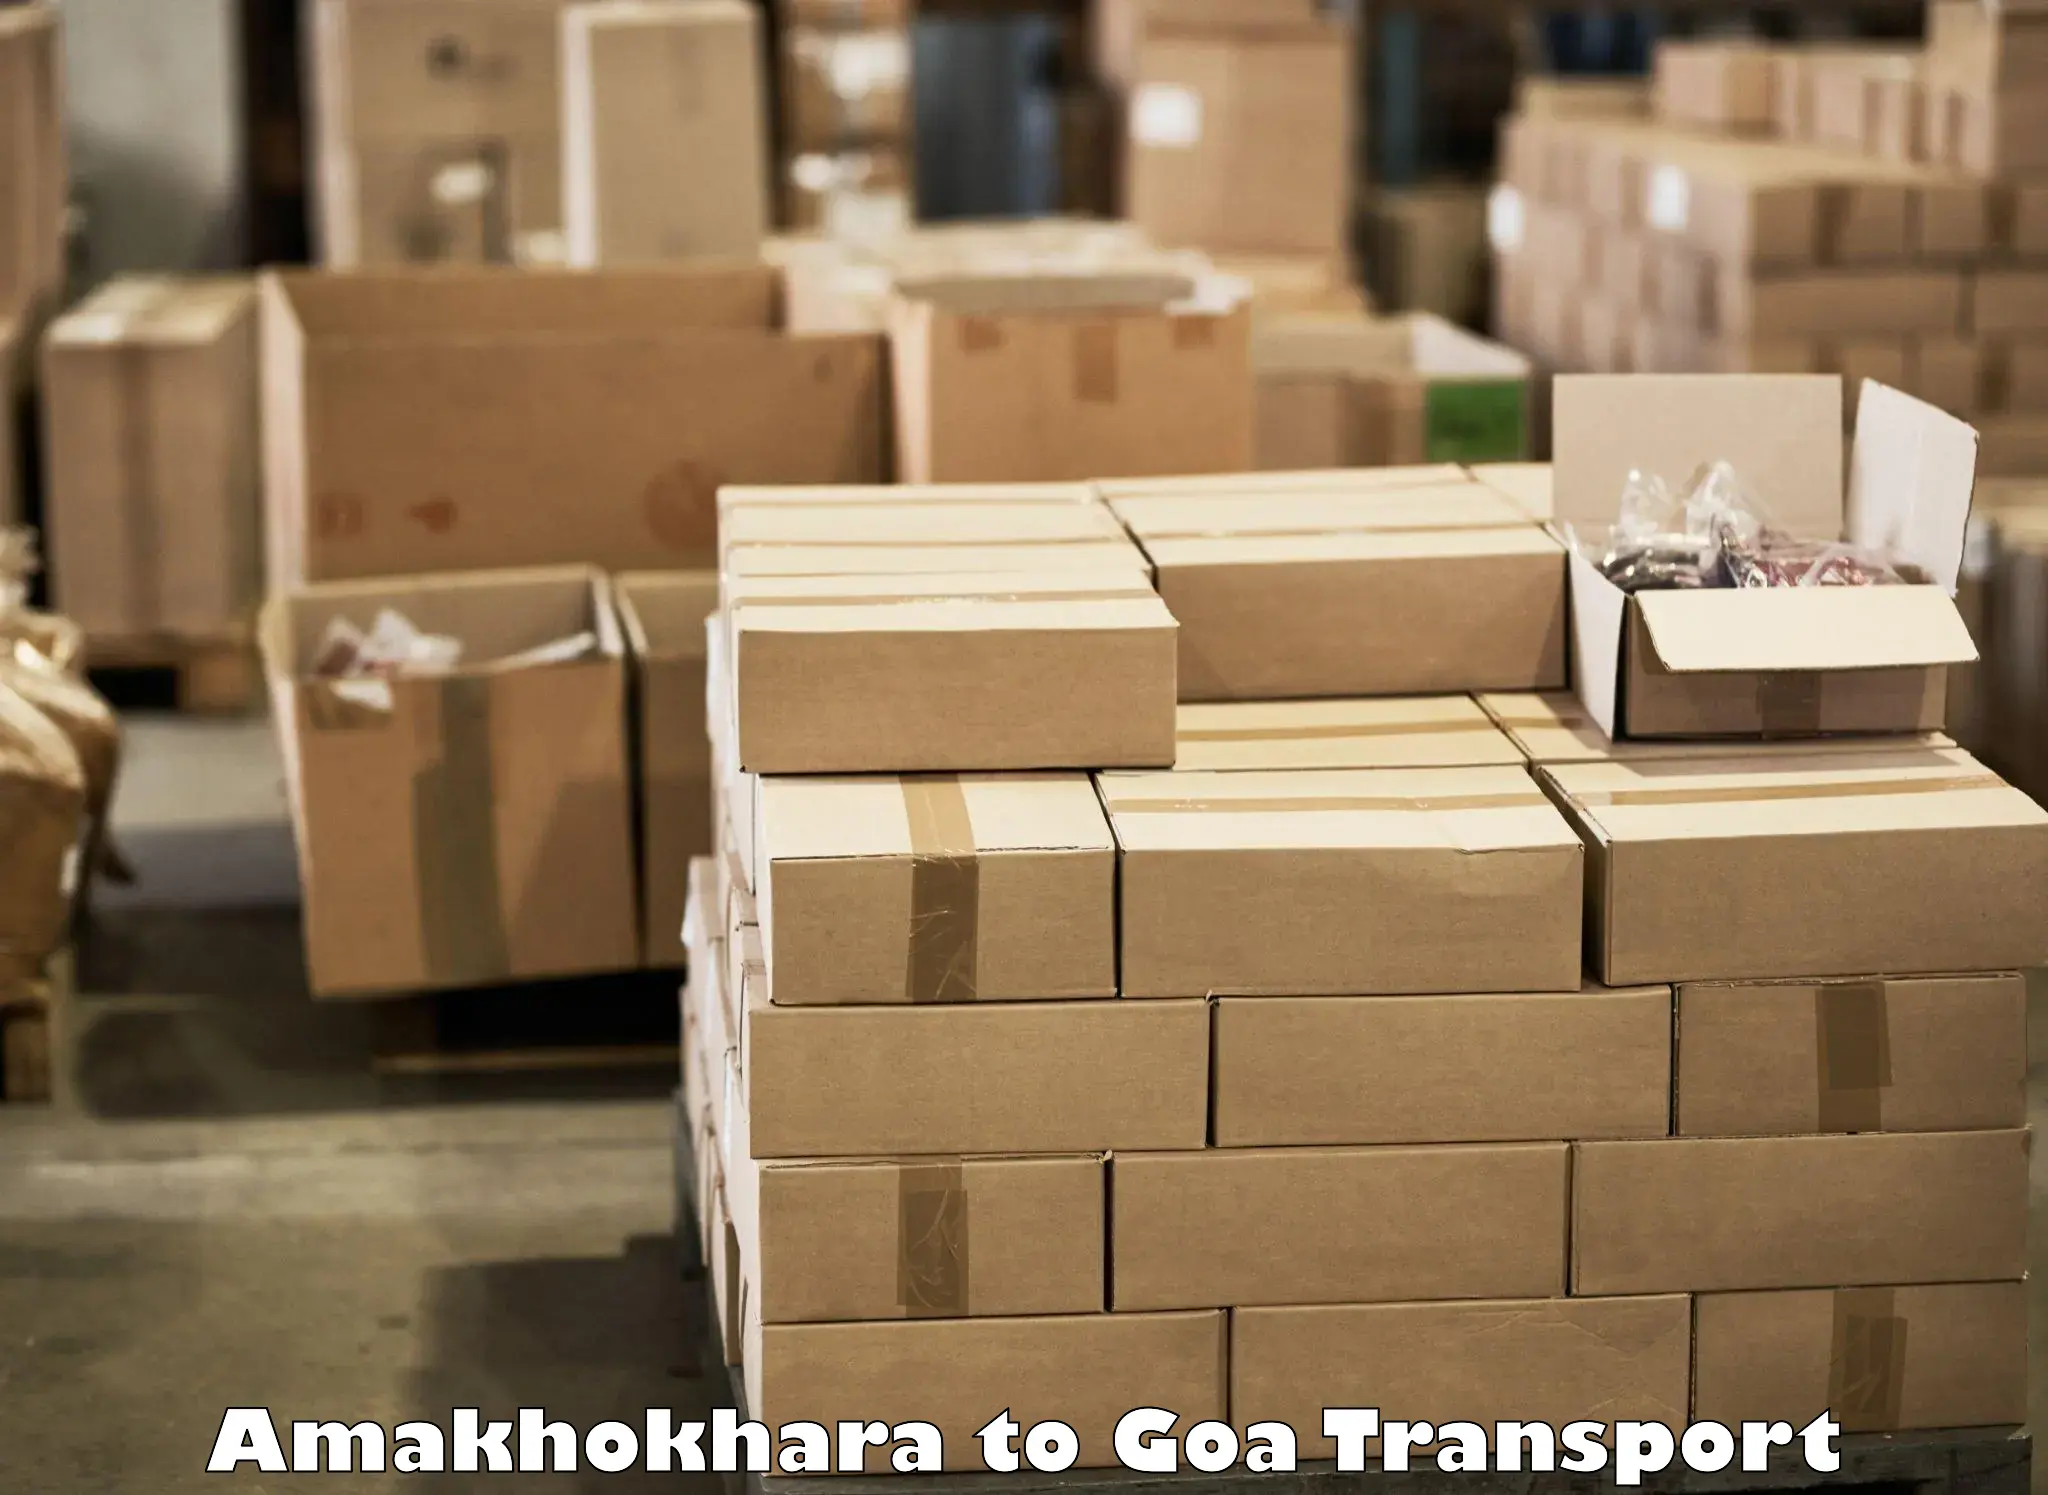 Transportation solution services Amakhokhara to Goa University